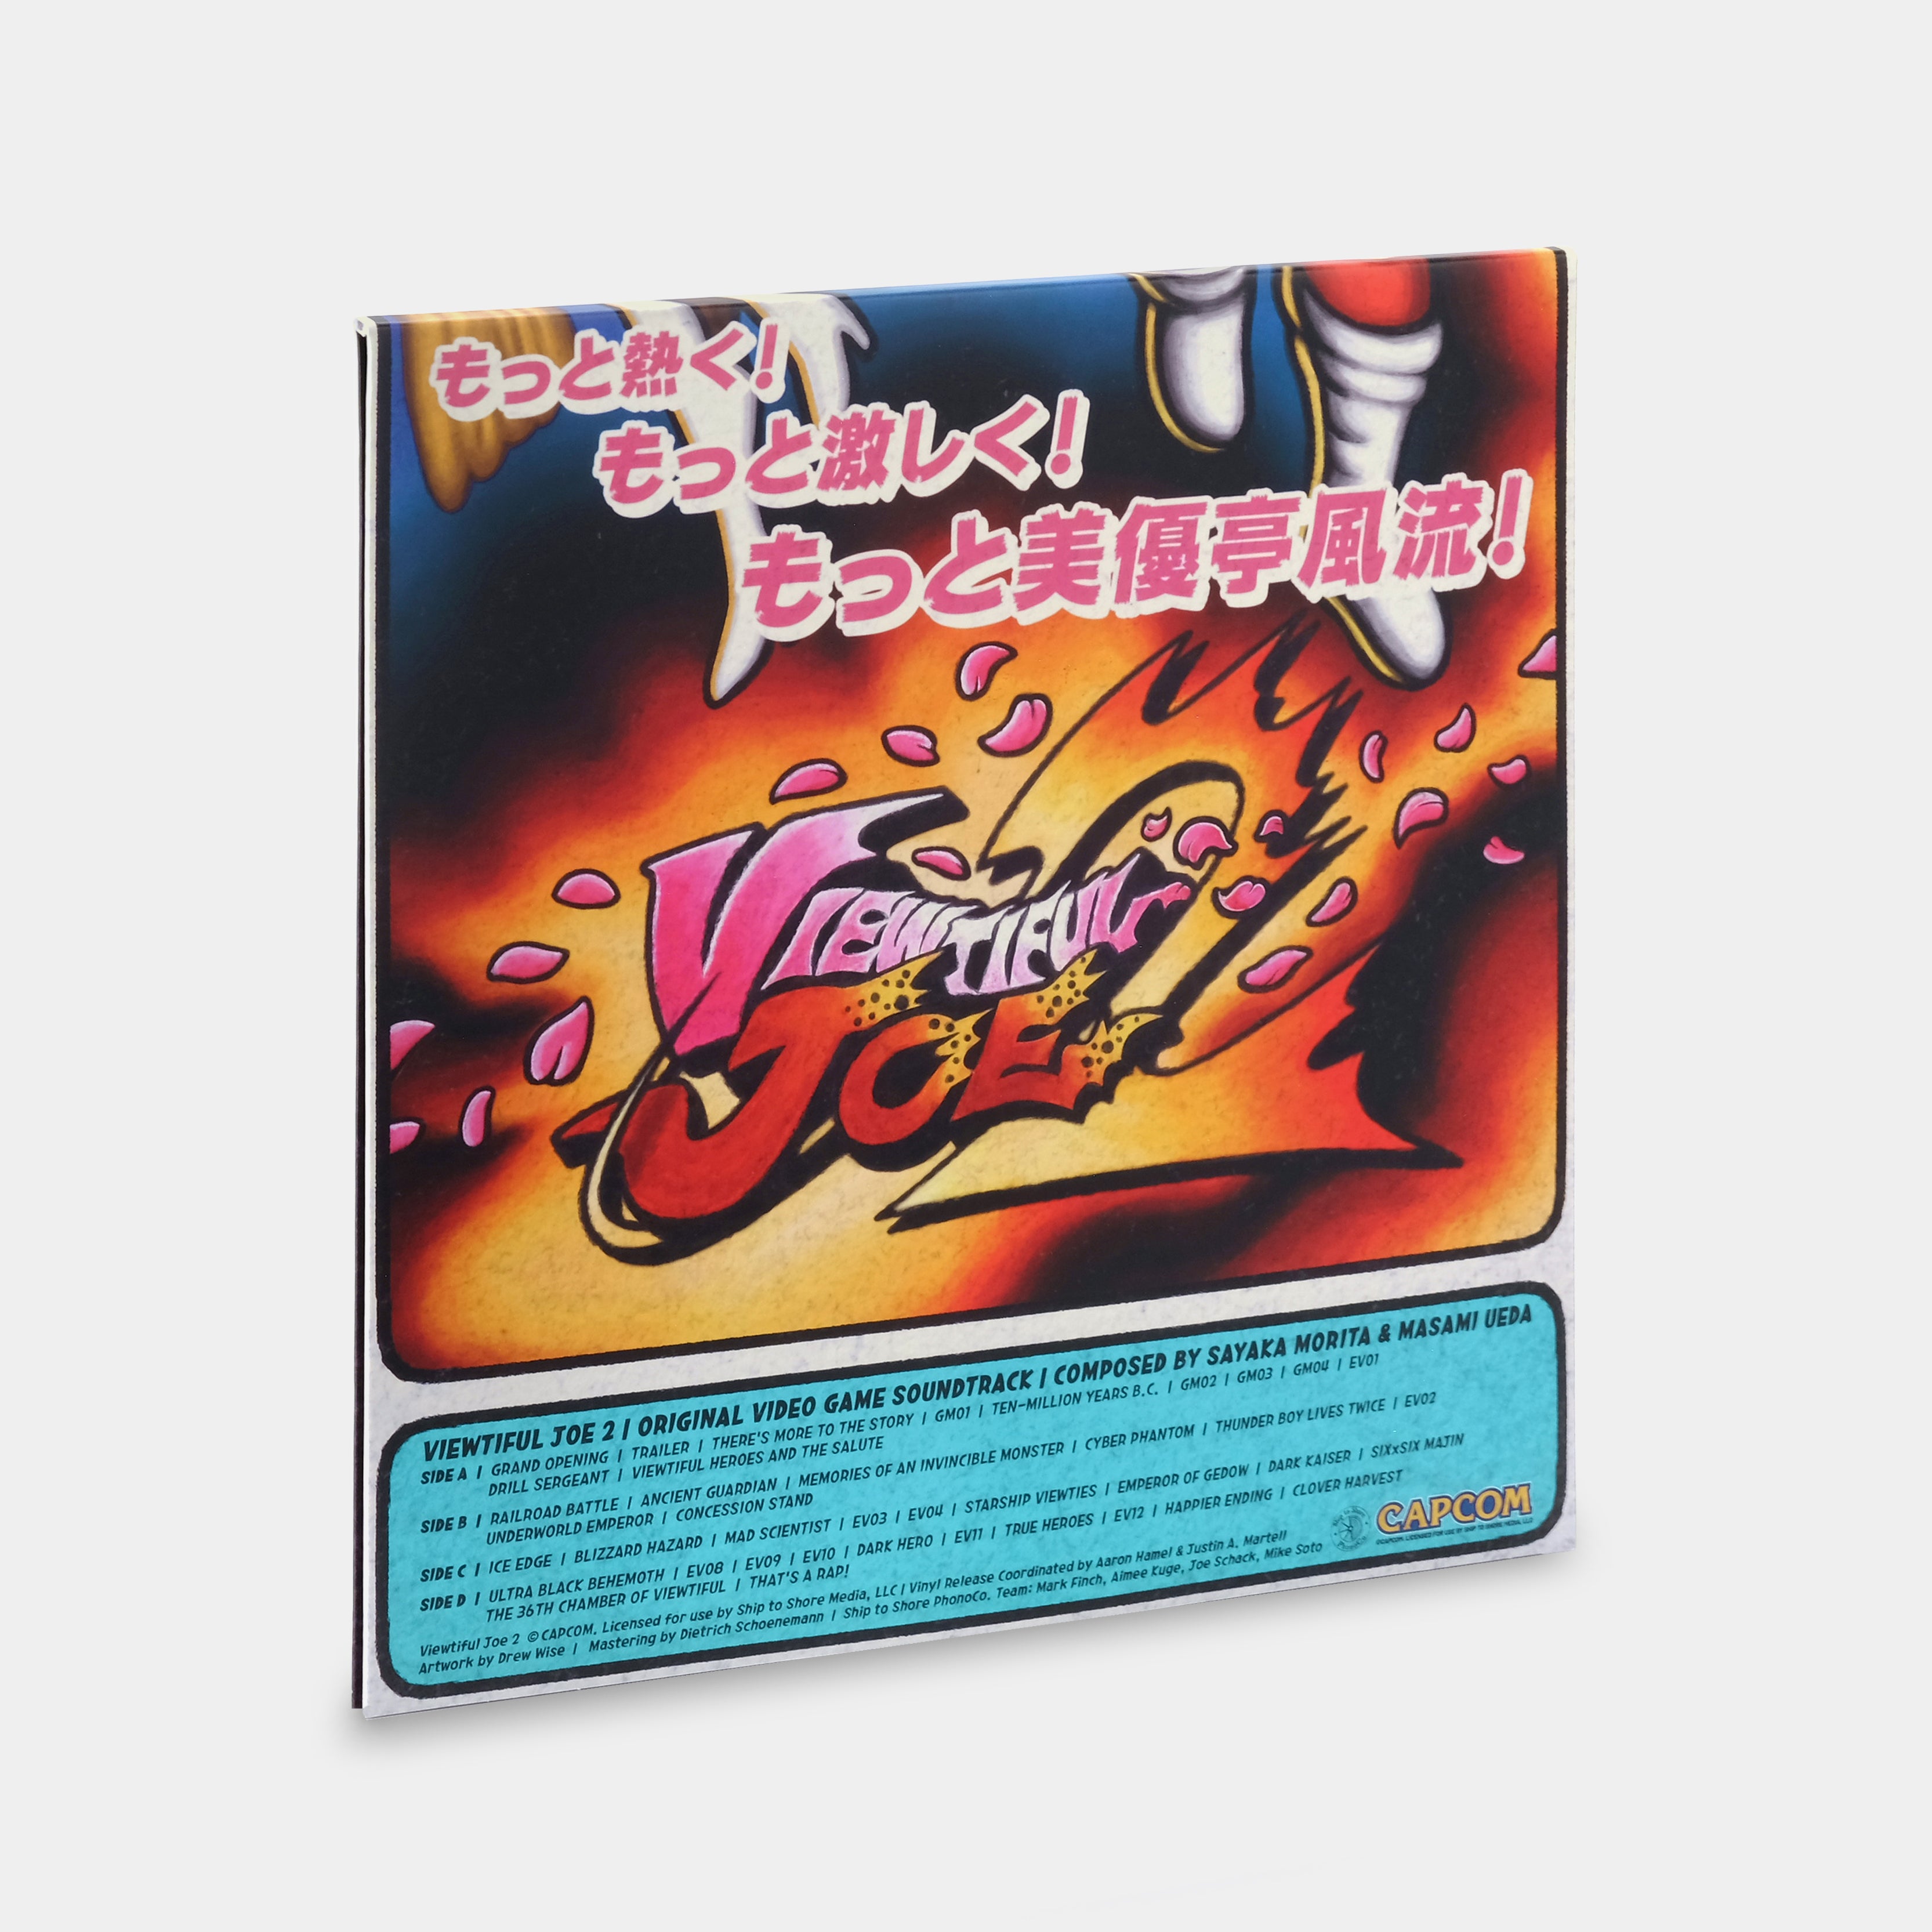 Sayaka Morita & Masami Ueda - Viewtiful Joe 2 (Original Video Game Soundtrack) 2xLP Clear Vinyl Record